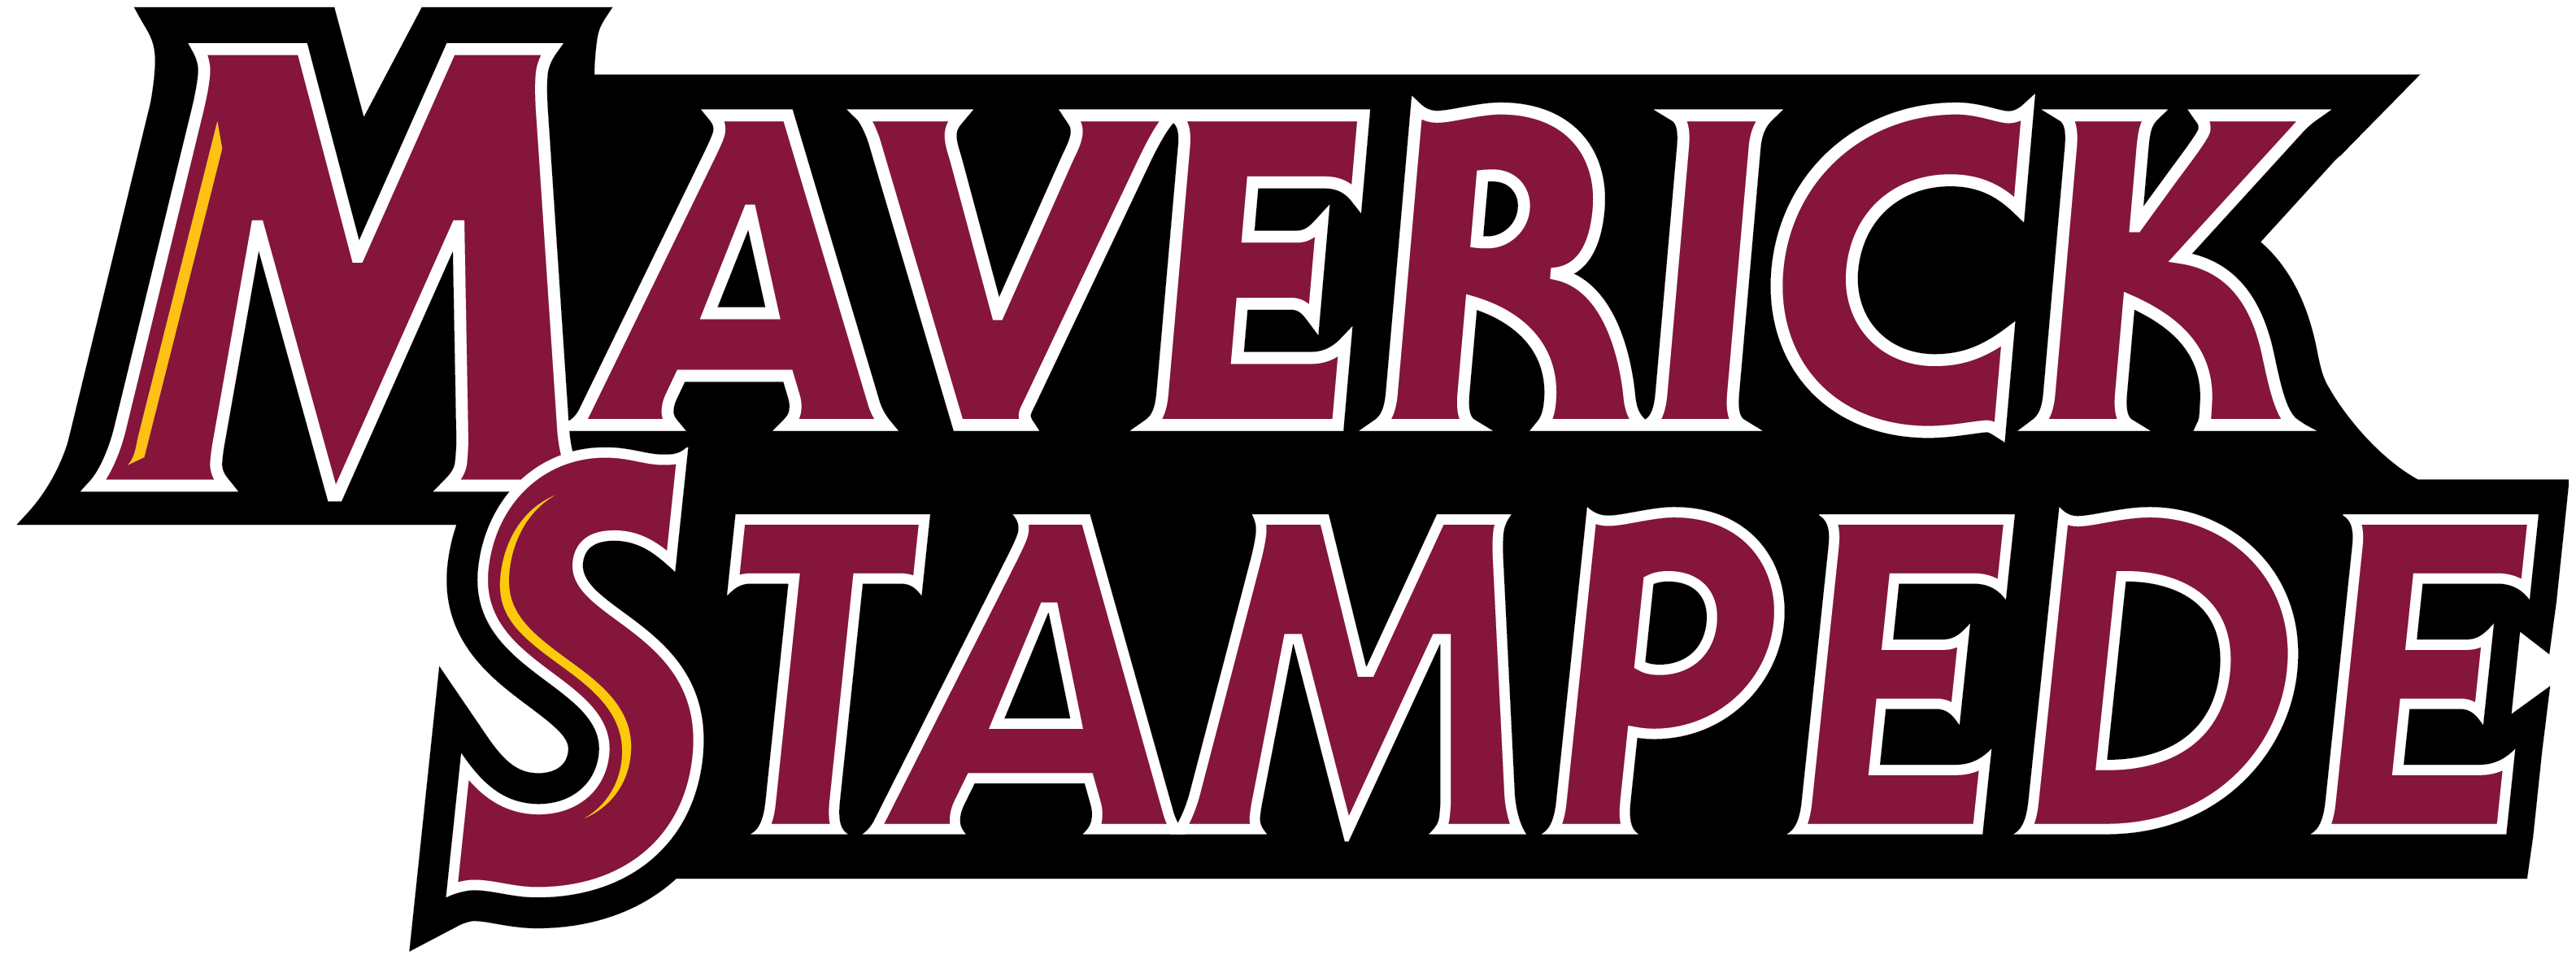 Maverick Stampede Logo